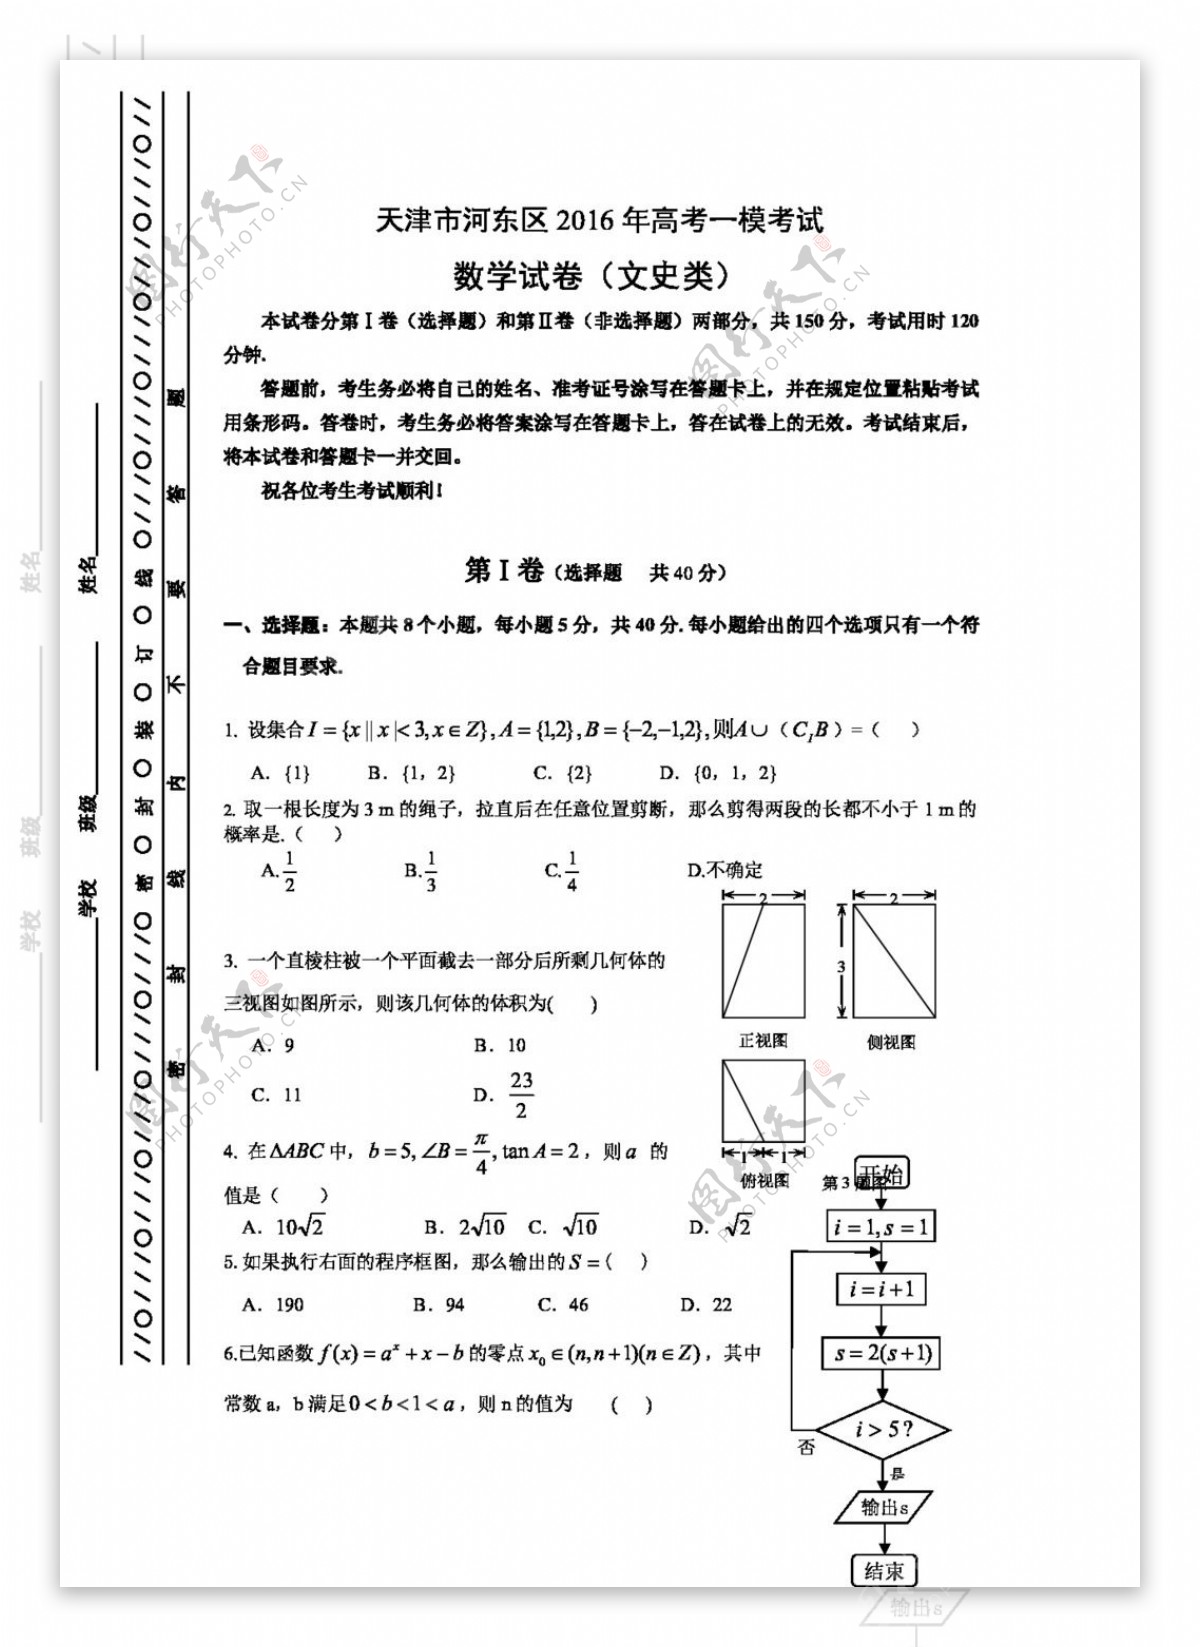 数学人教版天津市河东区2016年高考一模考试数学文试卷